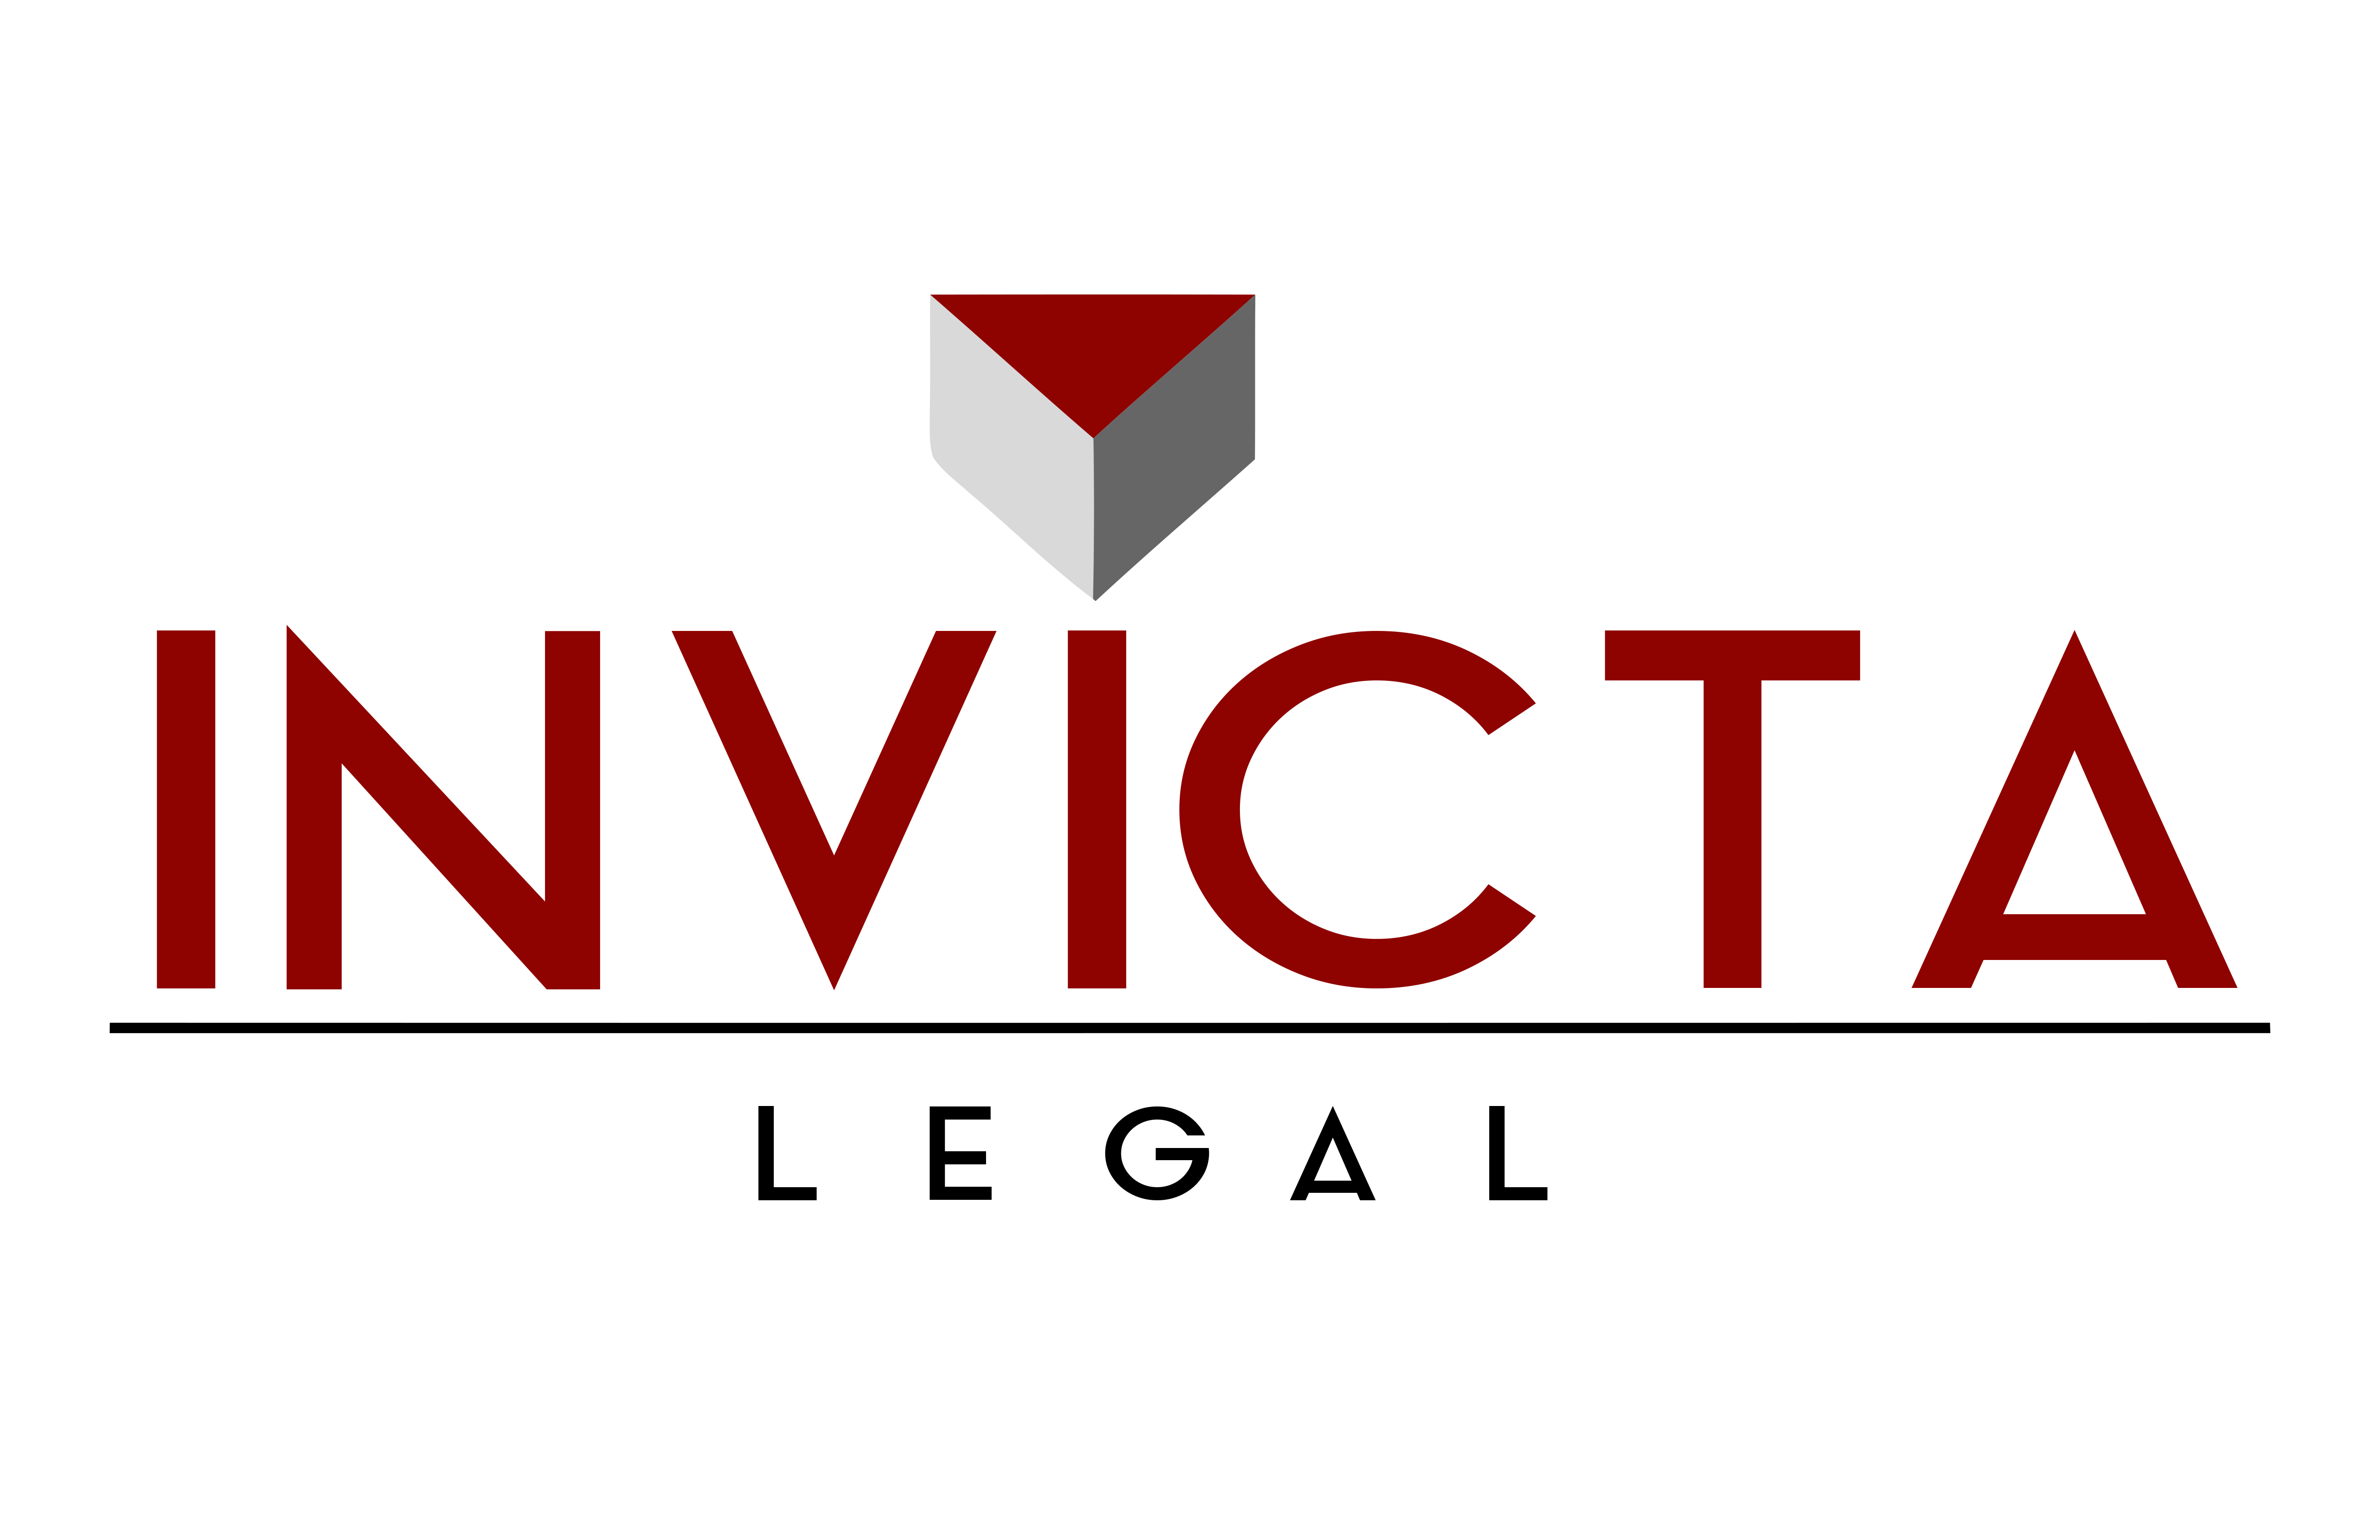 Invicta Legal Costa Rica